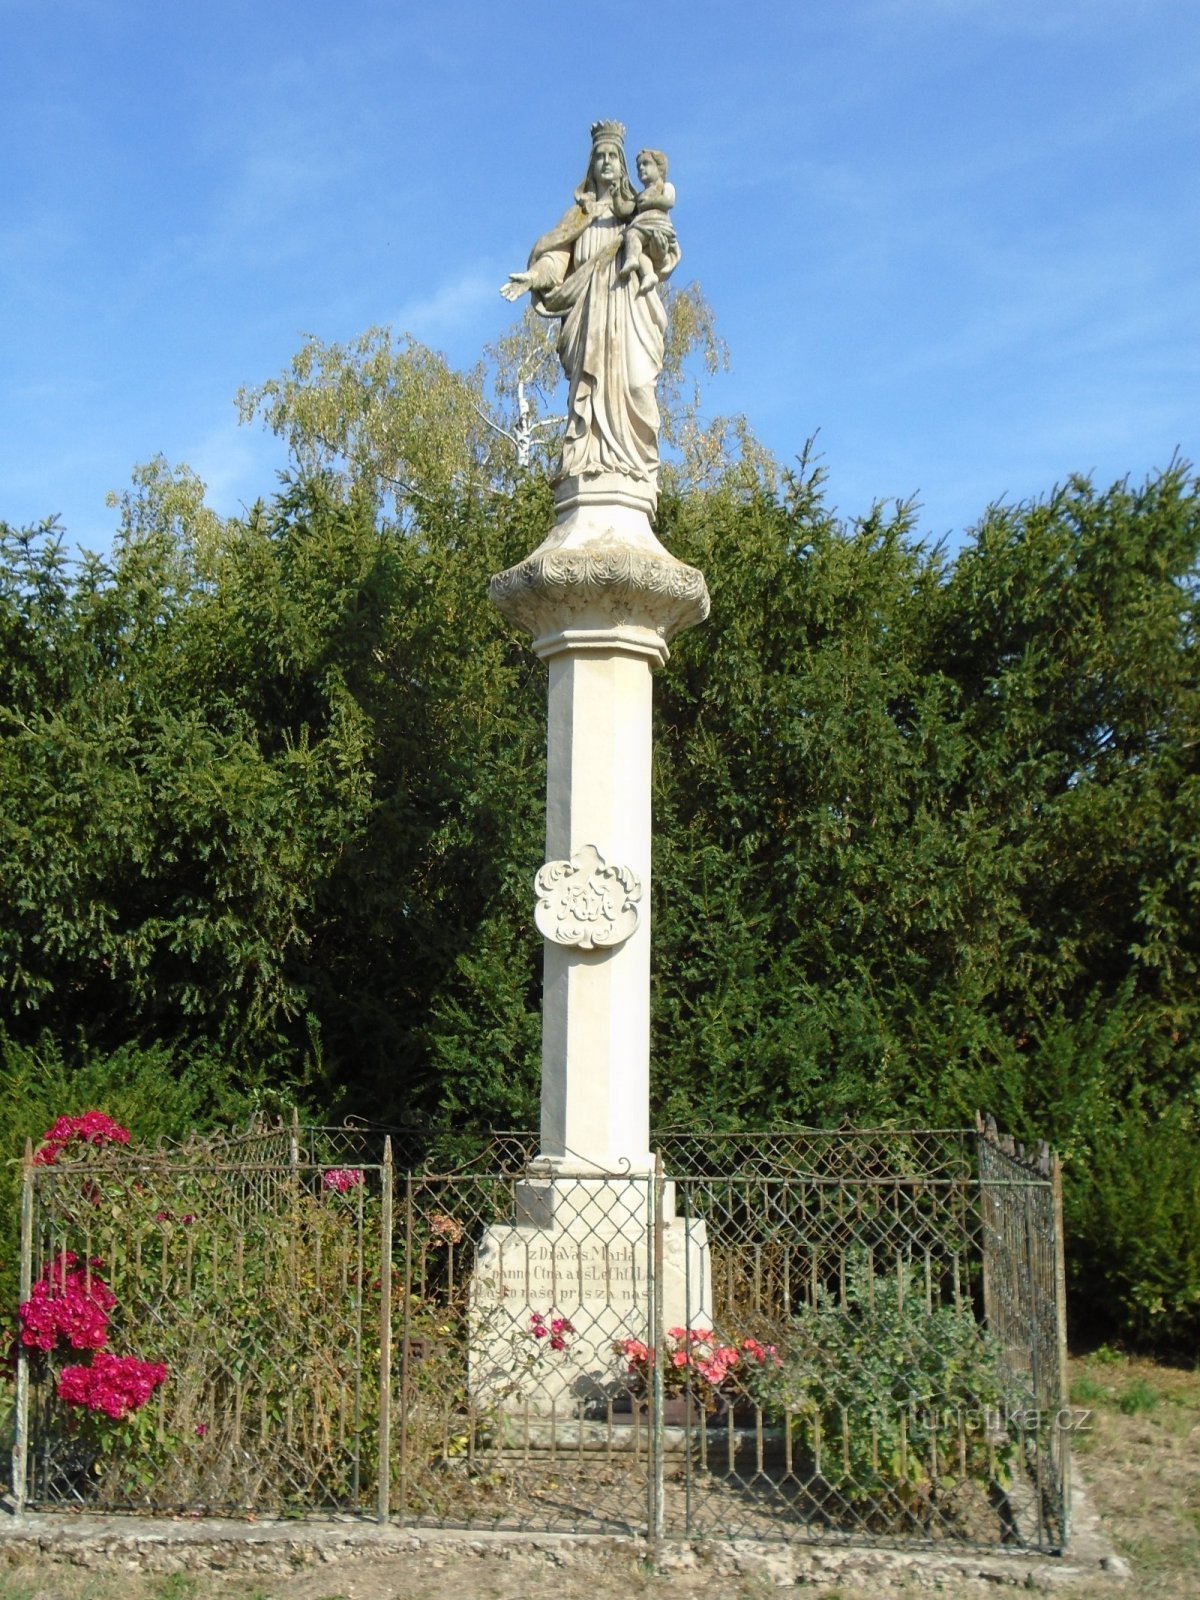 Статуя Девы Марии (Дуб, 21.9.2018)